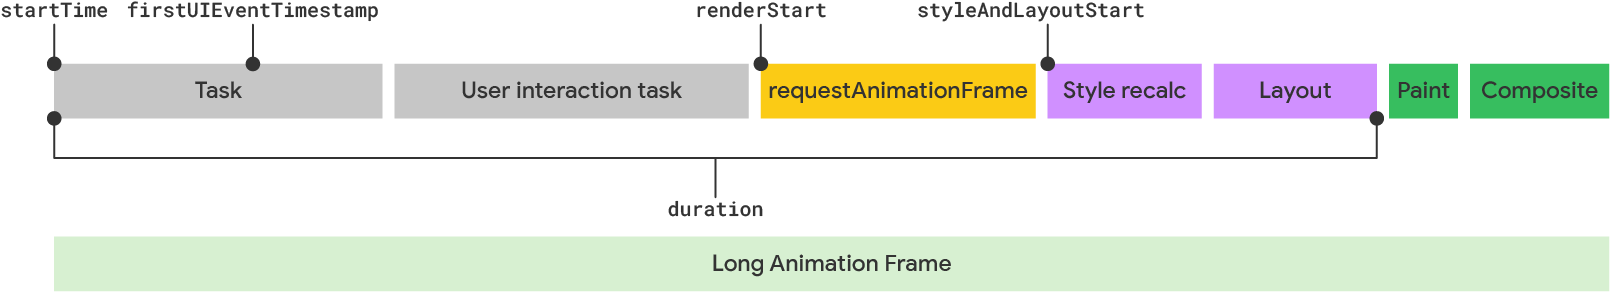 Visualizzazione di un frame di animazione lungo in base al modello LoAF.